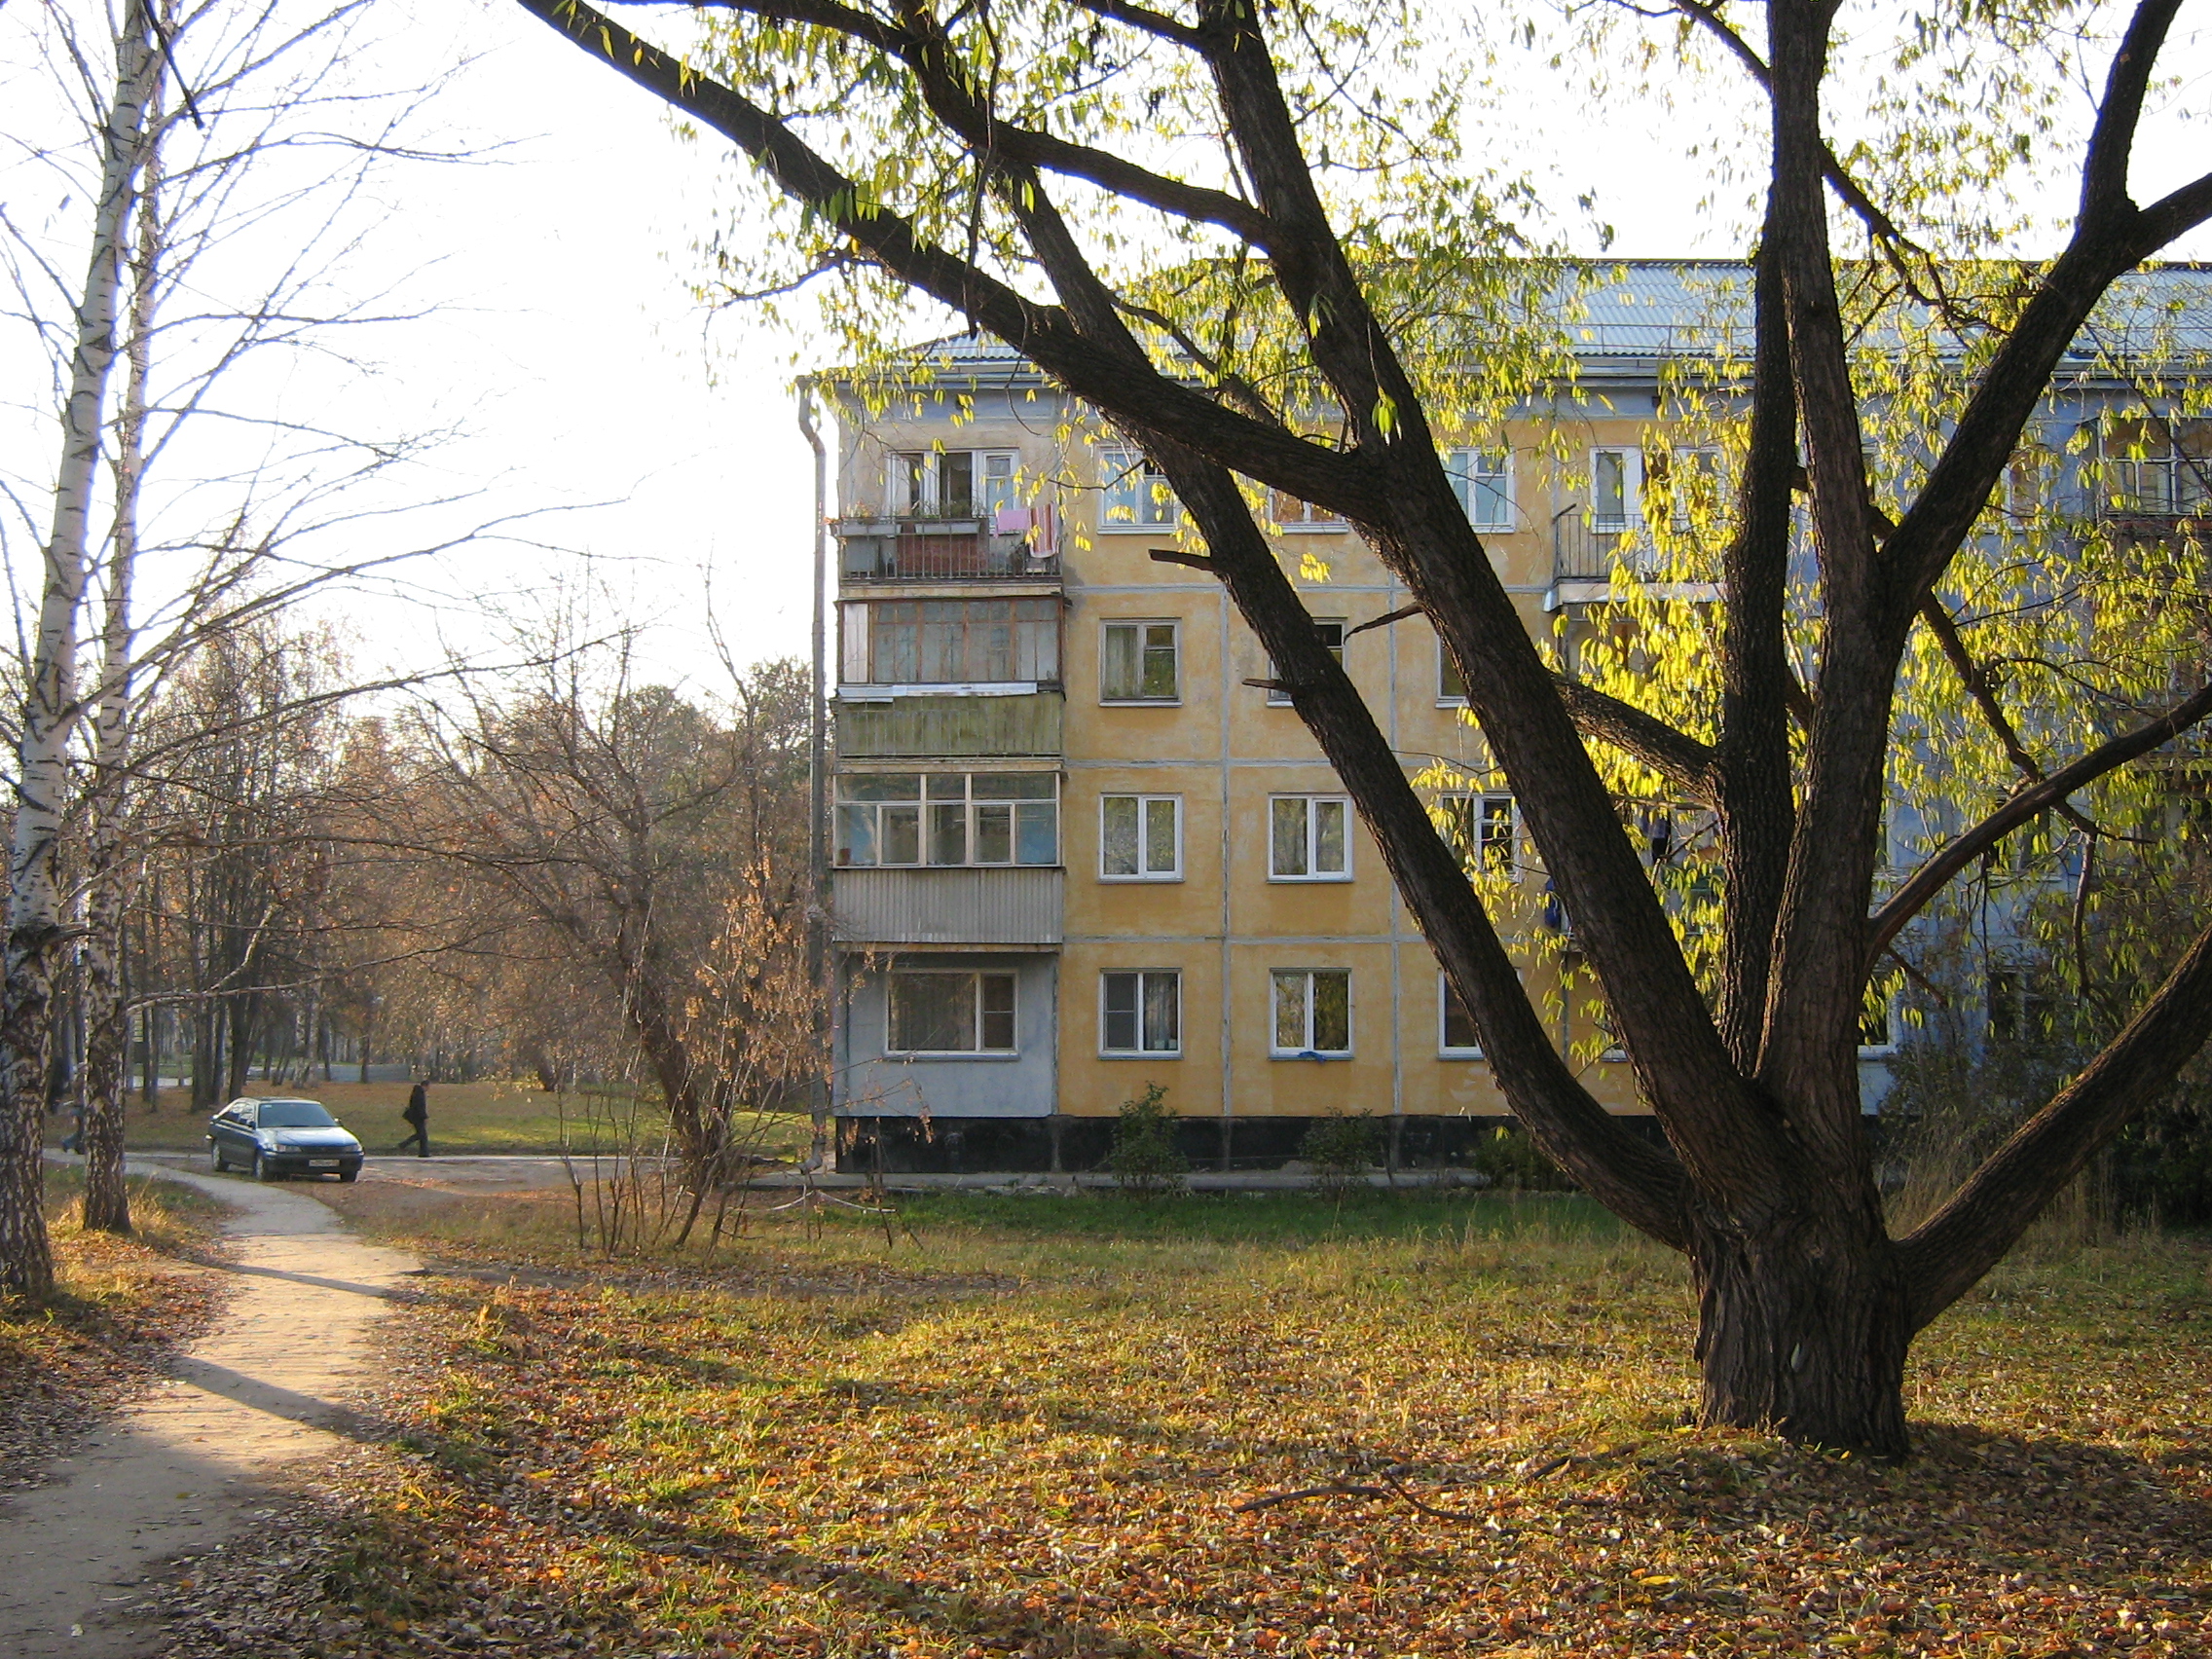 Autumn in Akademgorodok